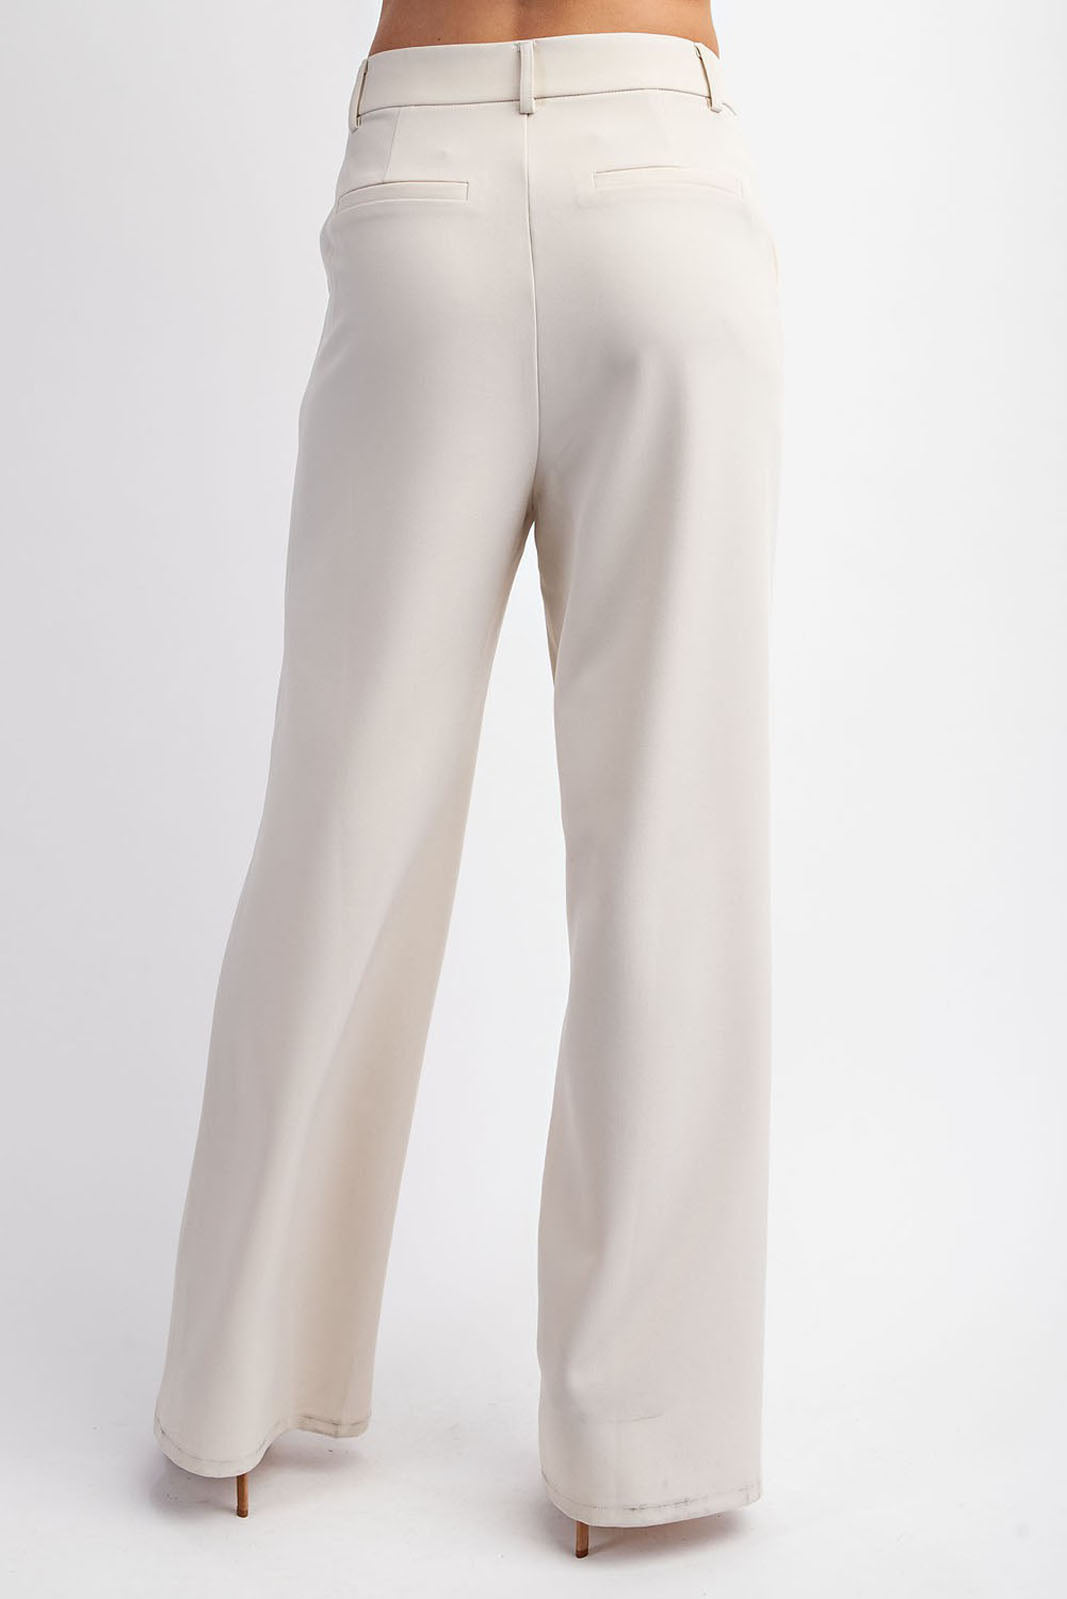 Kira Tailored Pants - Stylish and Timeless fab'rik Trousers